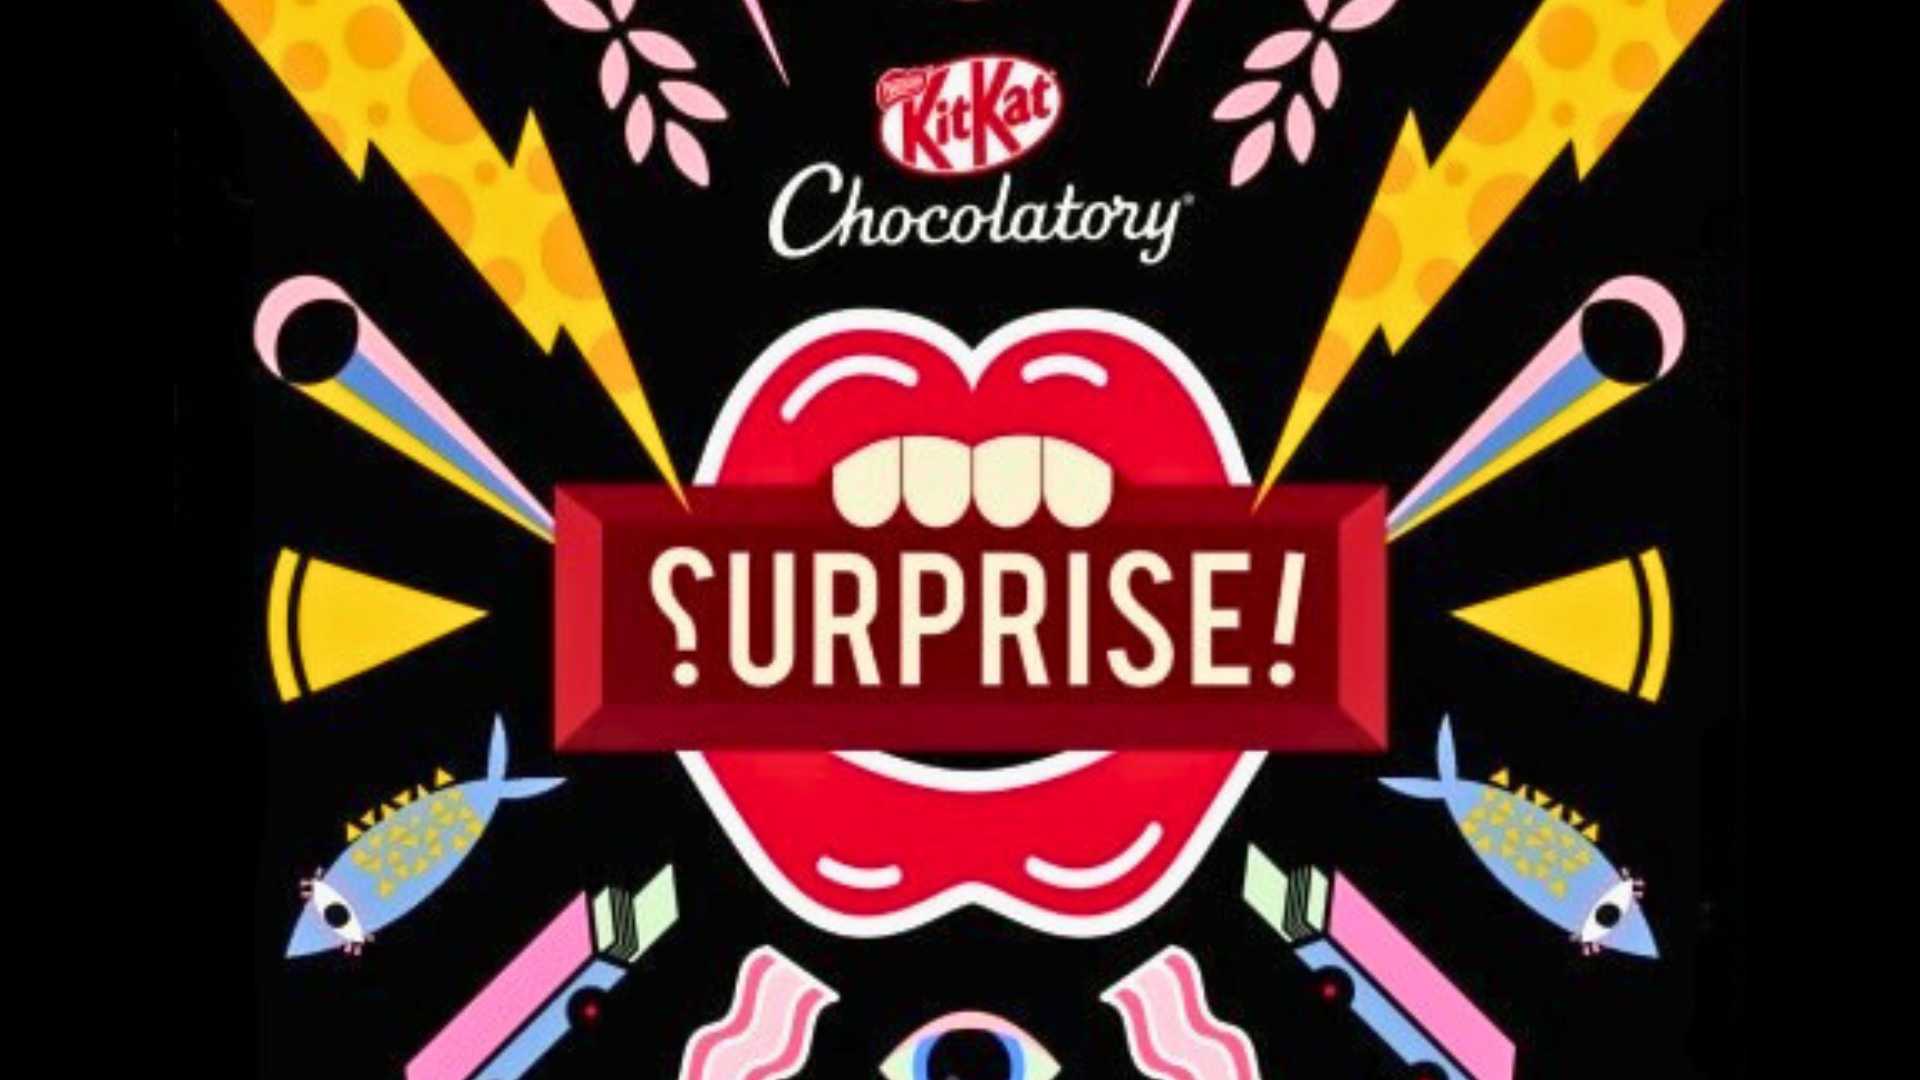 KitKat Chocolatory lança gifting com sabores inéditos para o Dia da Mentira